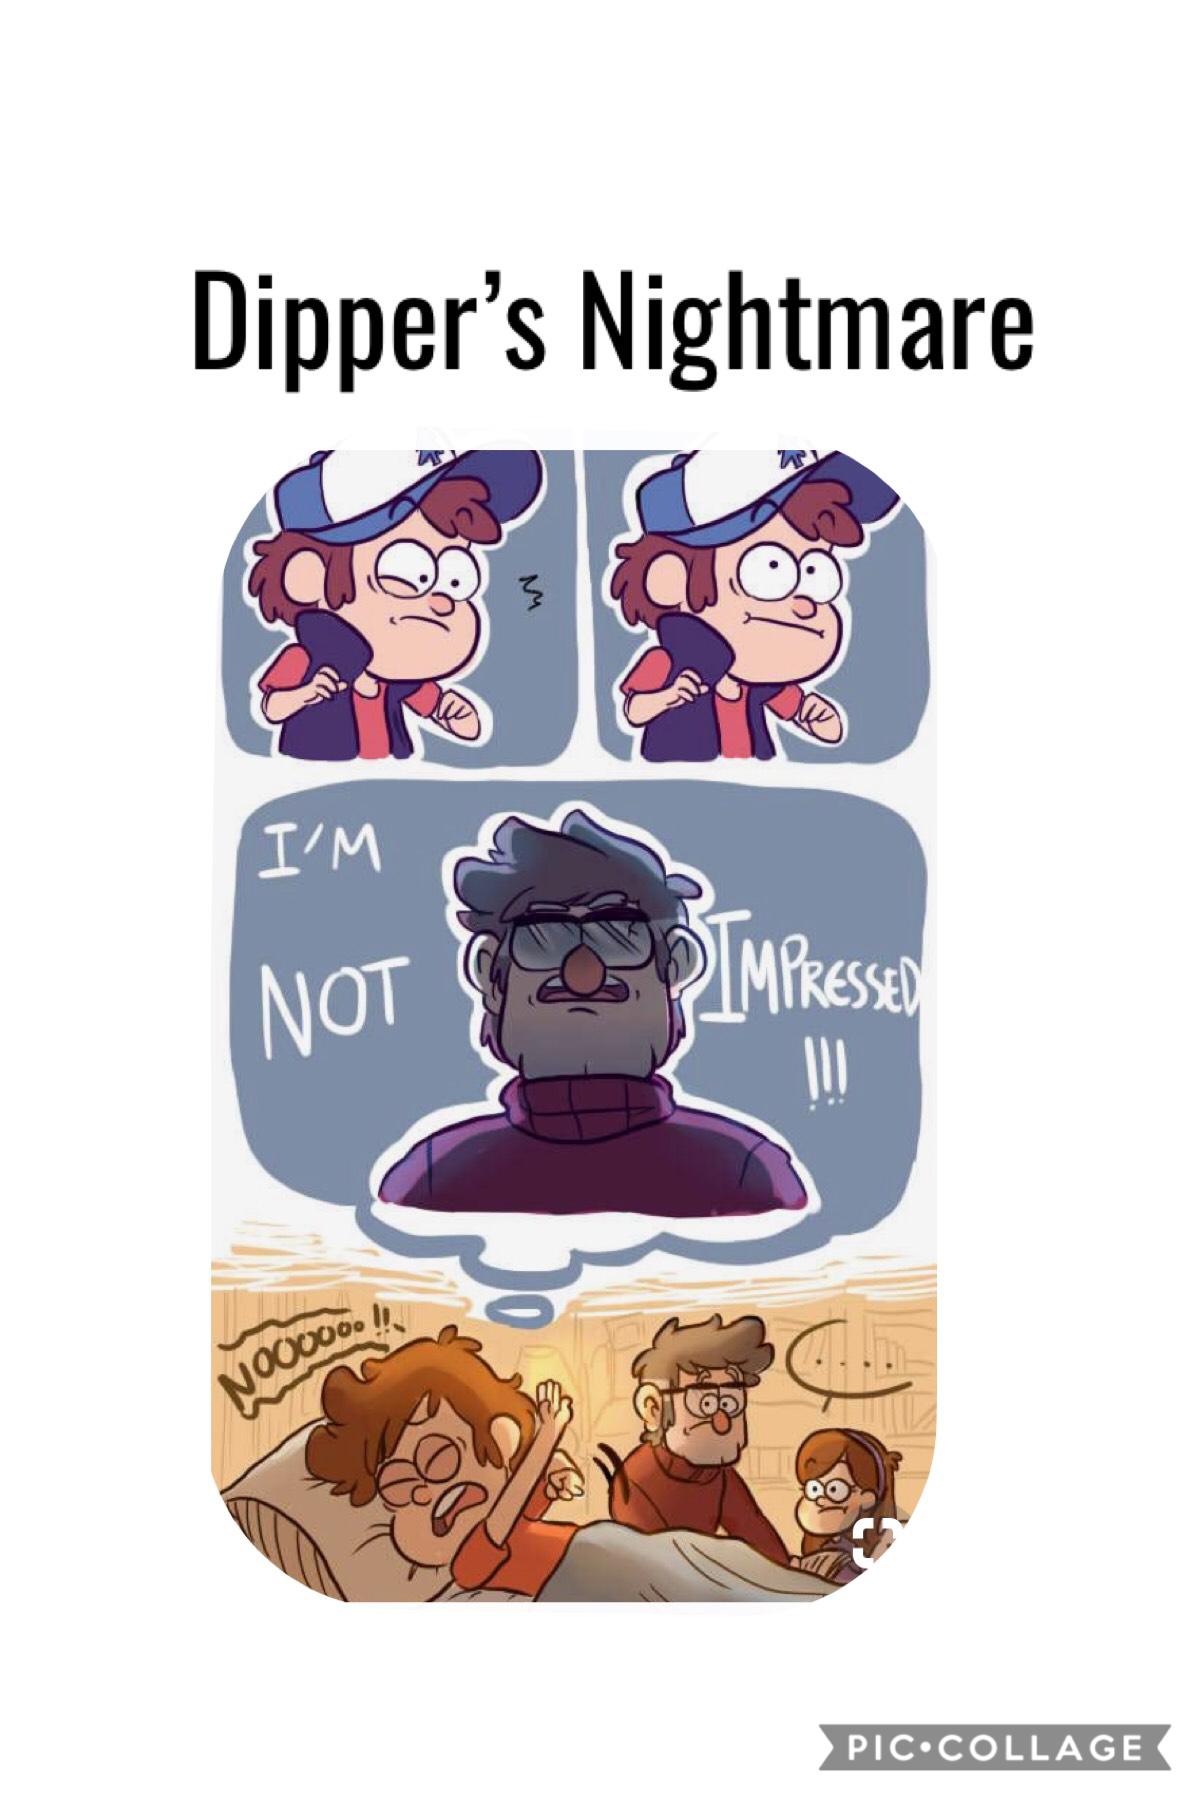 Poor dipper